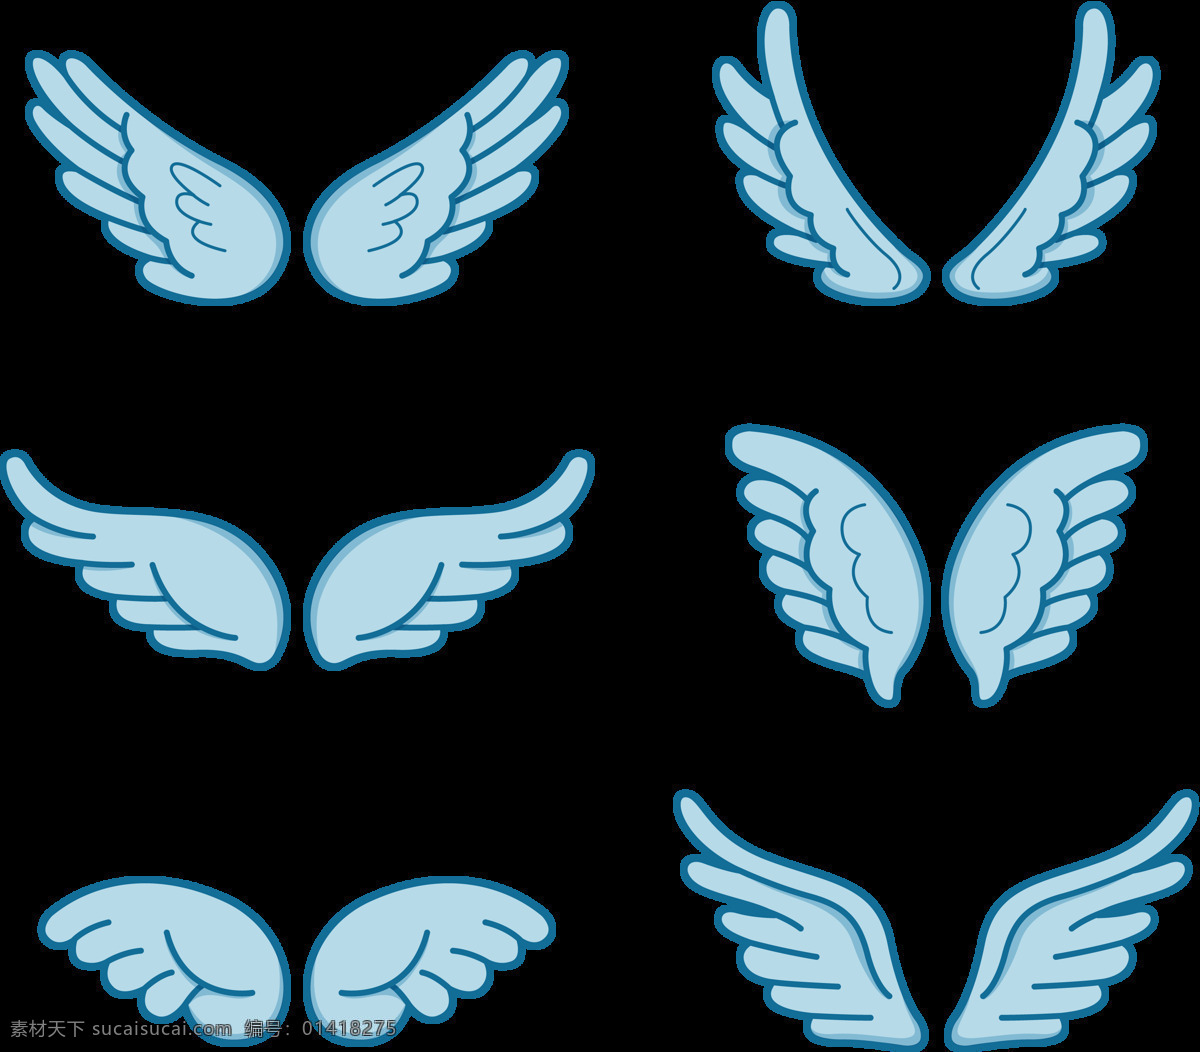 蓝色 调 可爱 翅膀 免 抠 透明 图 层 手绘翅膀 翅膀元素 小 天使 卡通翅膀 翅膀图片素材 纹身图案 翅膀素材 手绘翅膀图片